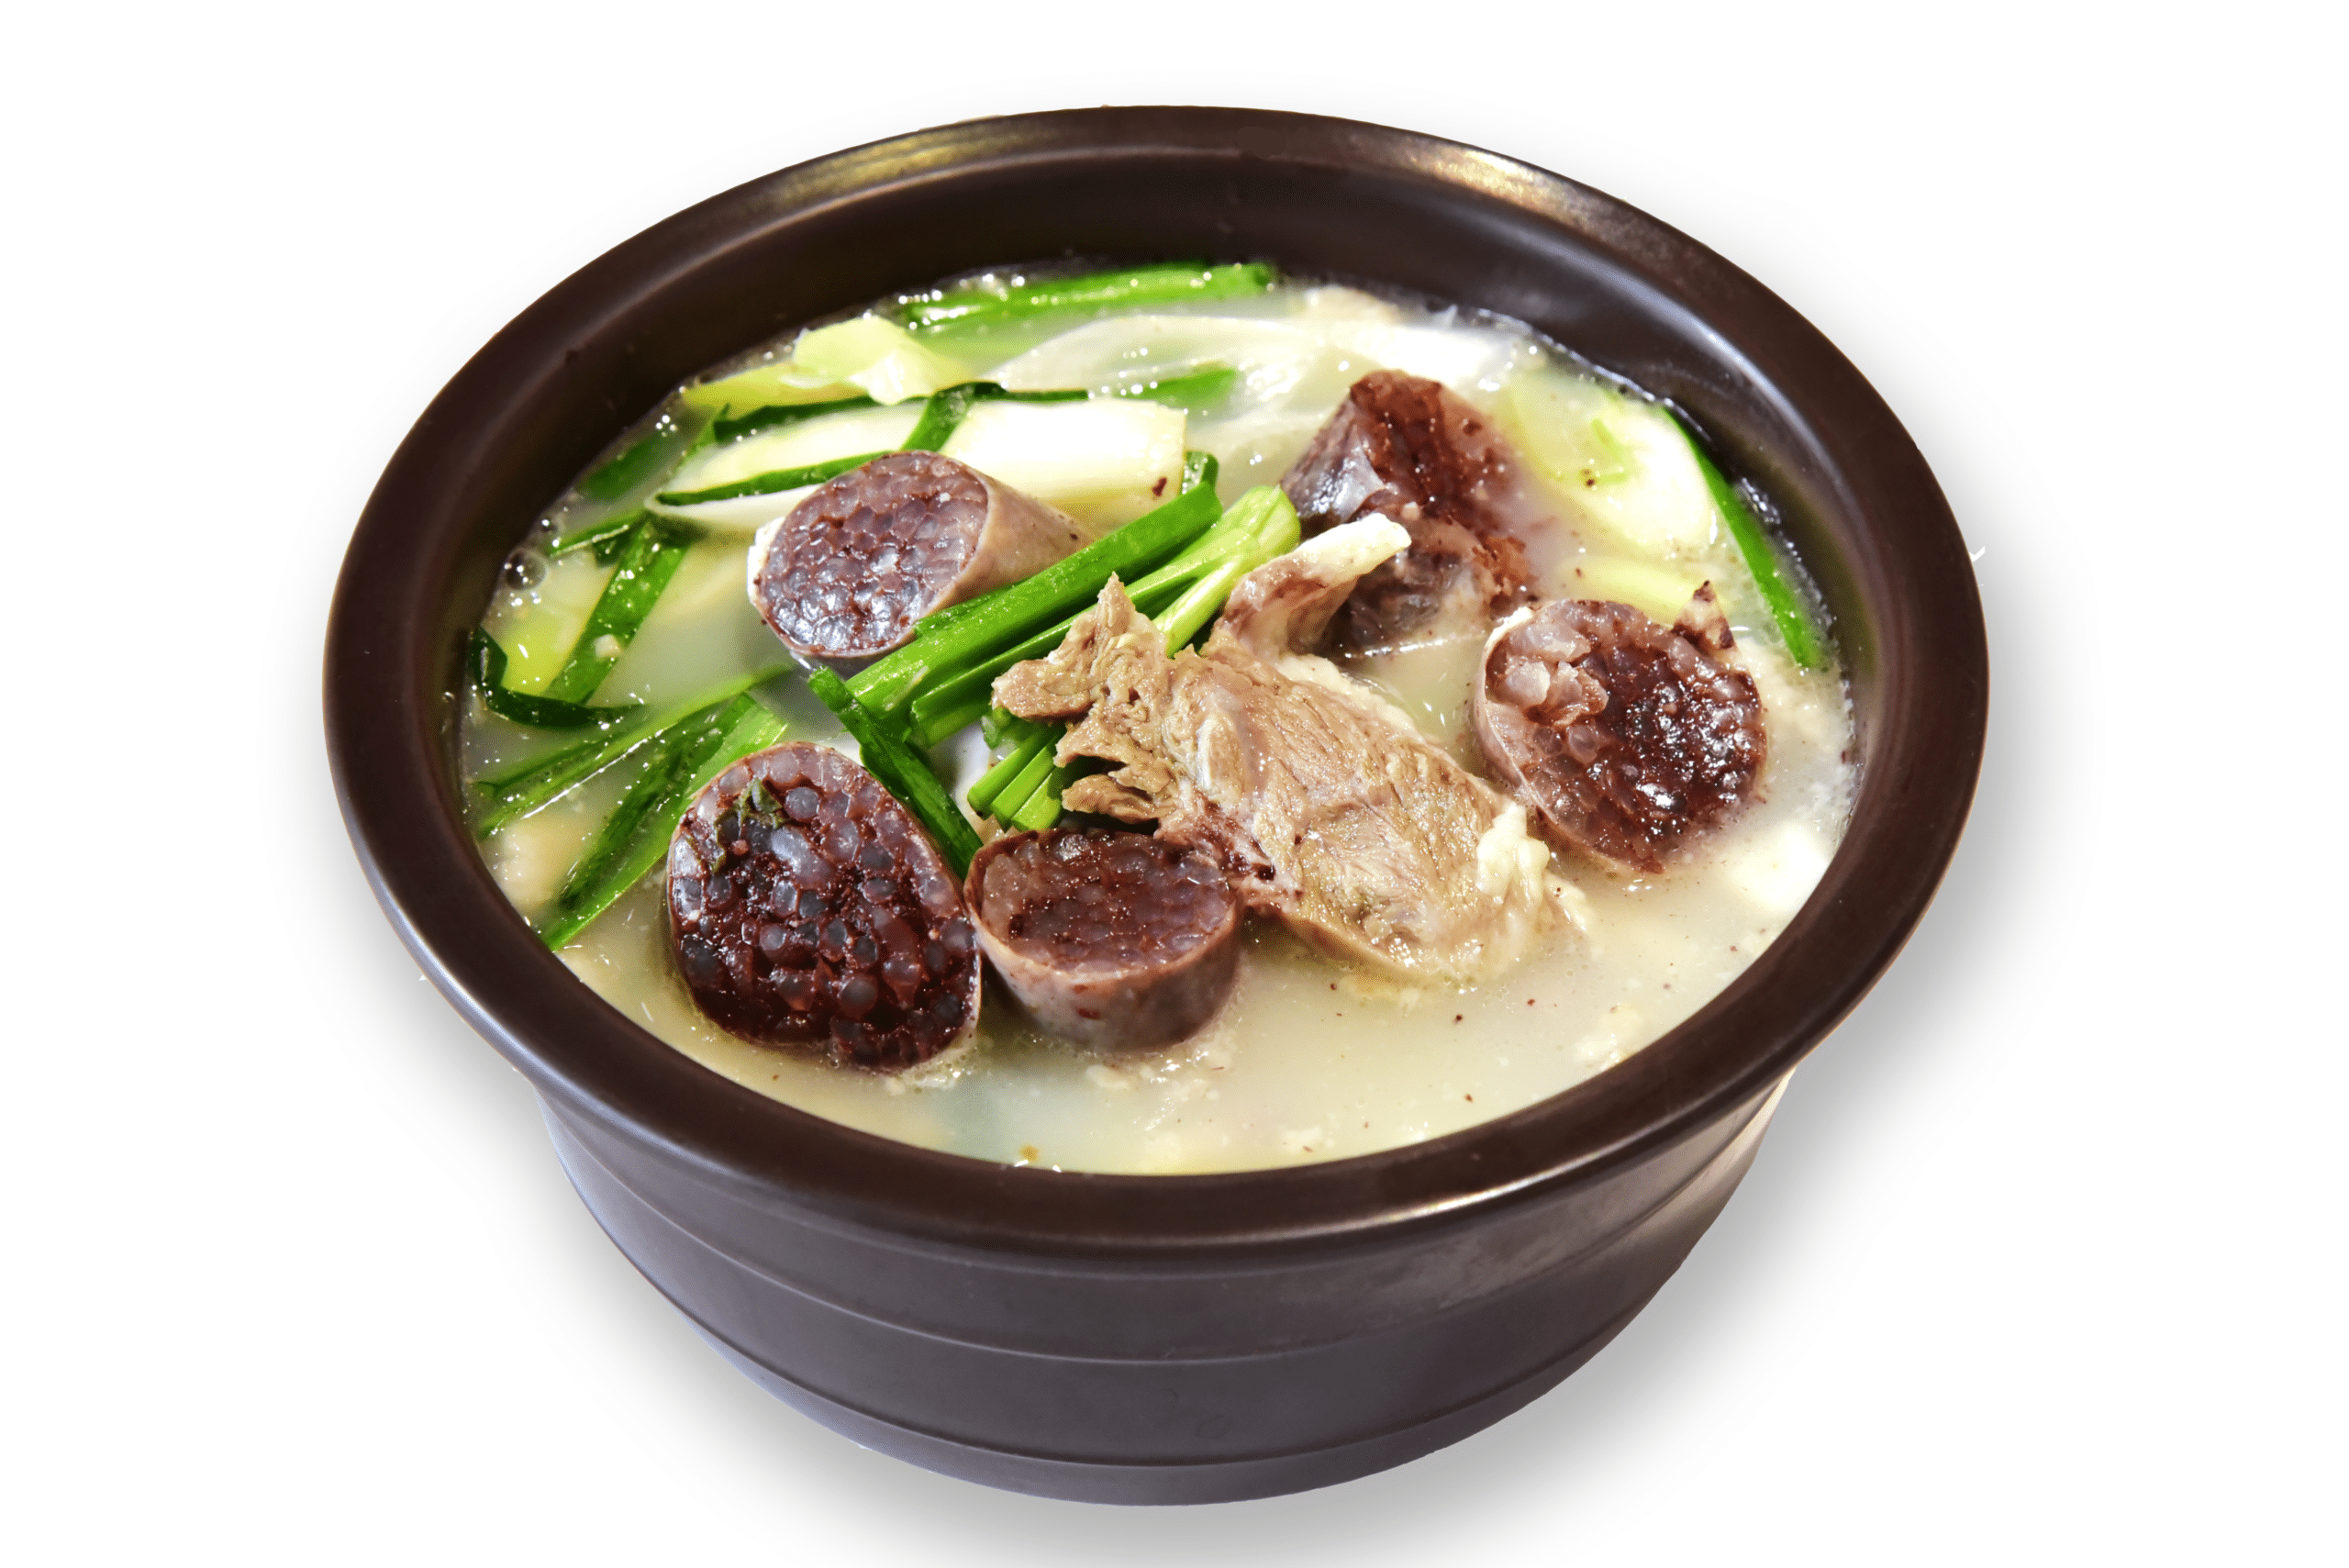 韓國食品-[新世界韓食品] 韓式血腸湯飯 450g (急凍)